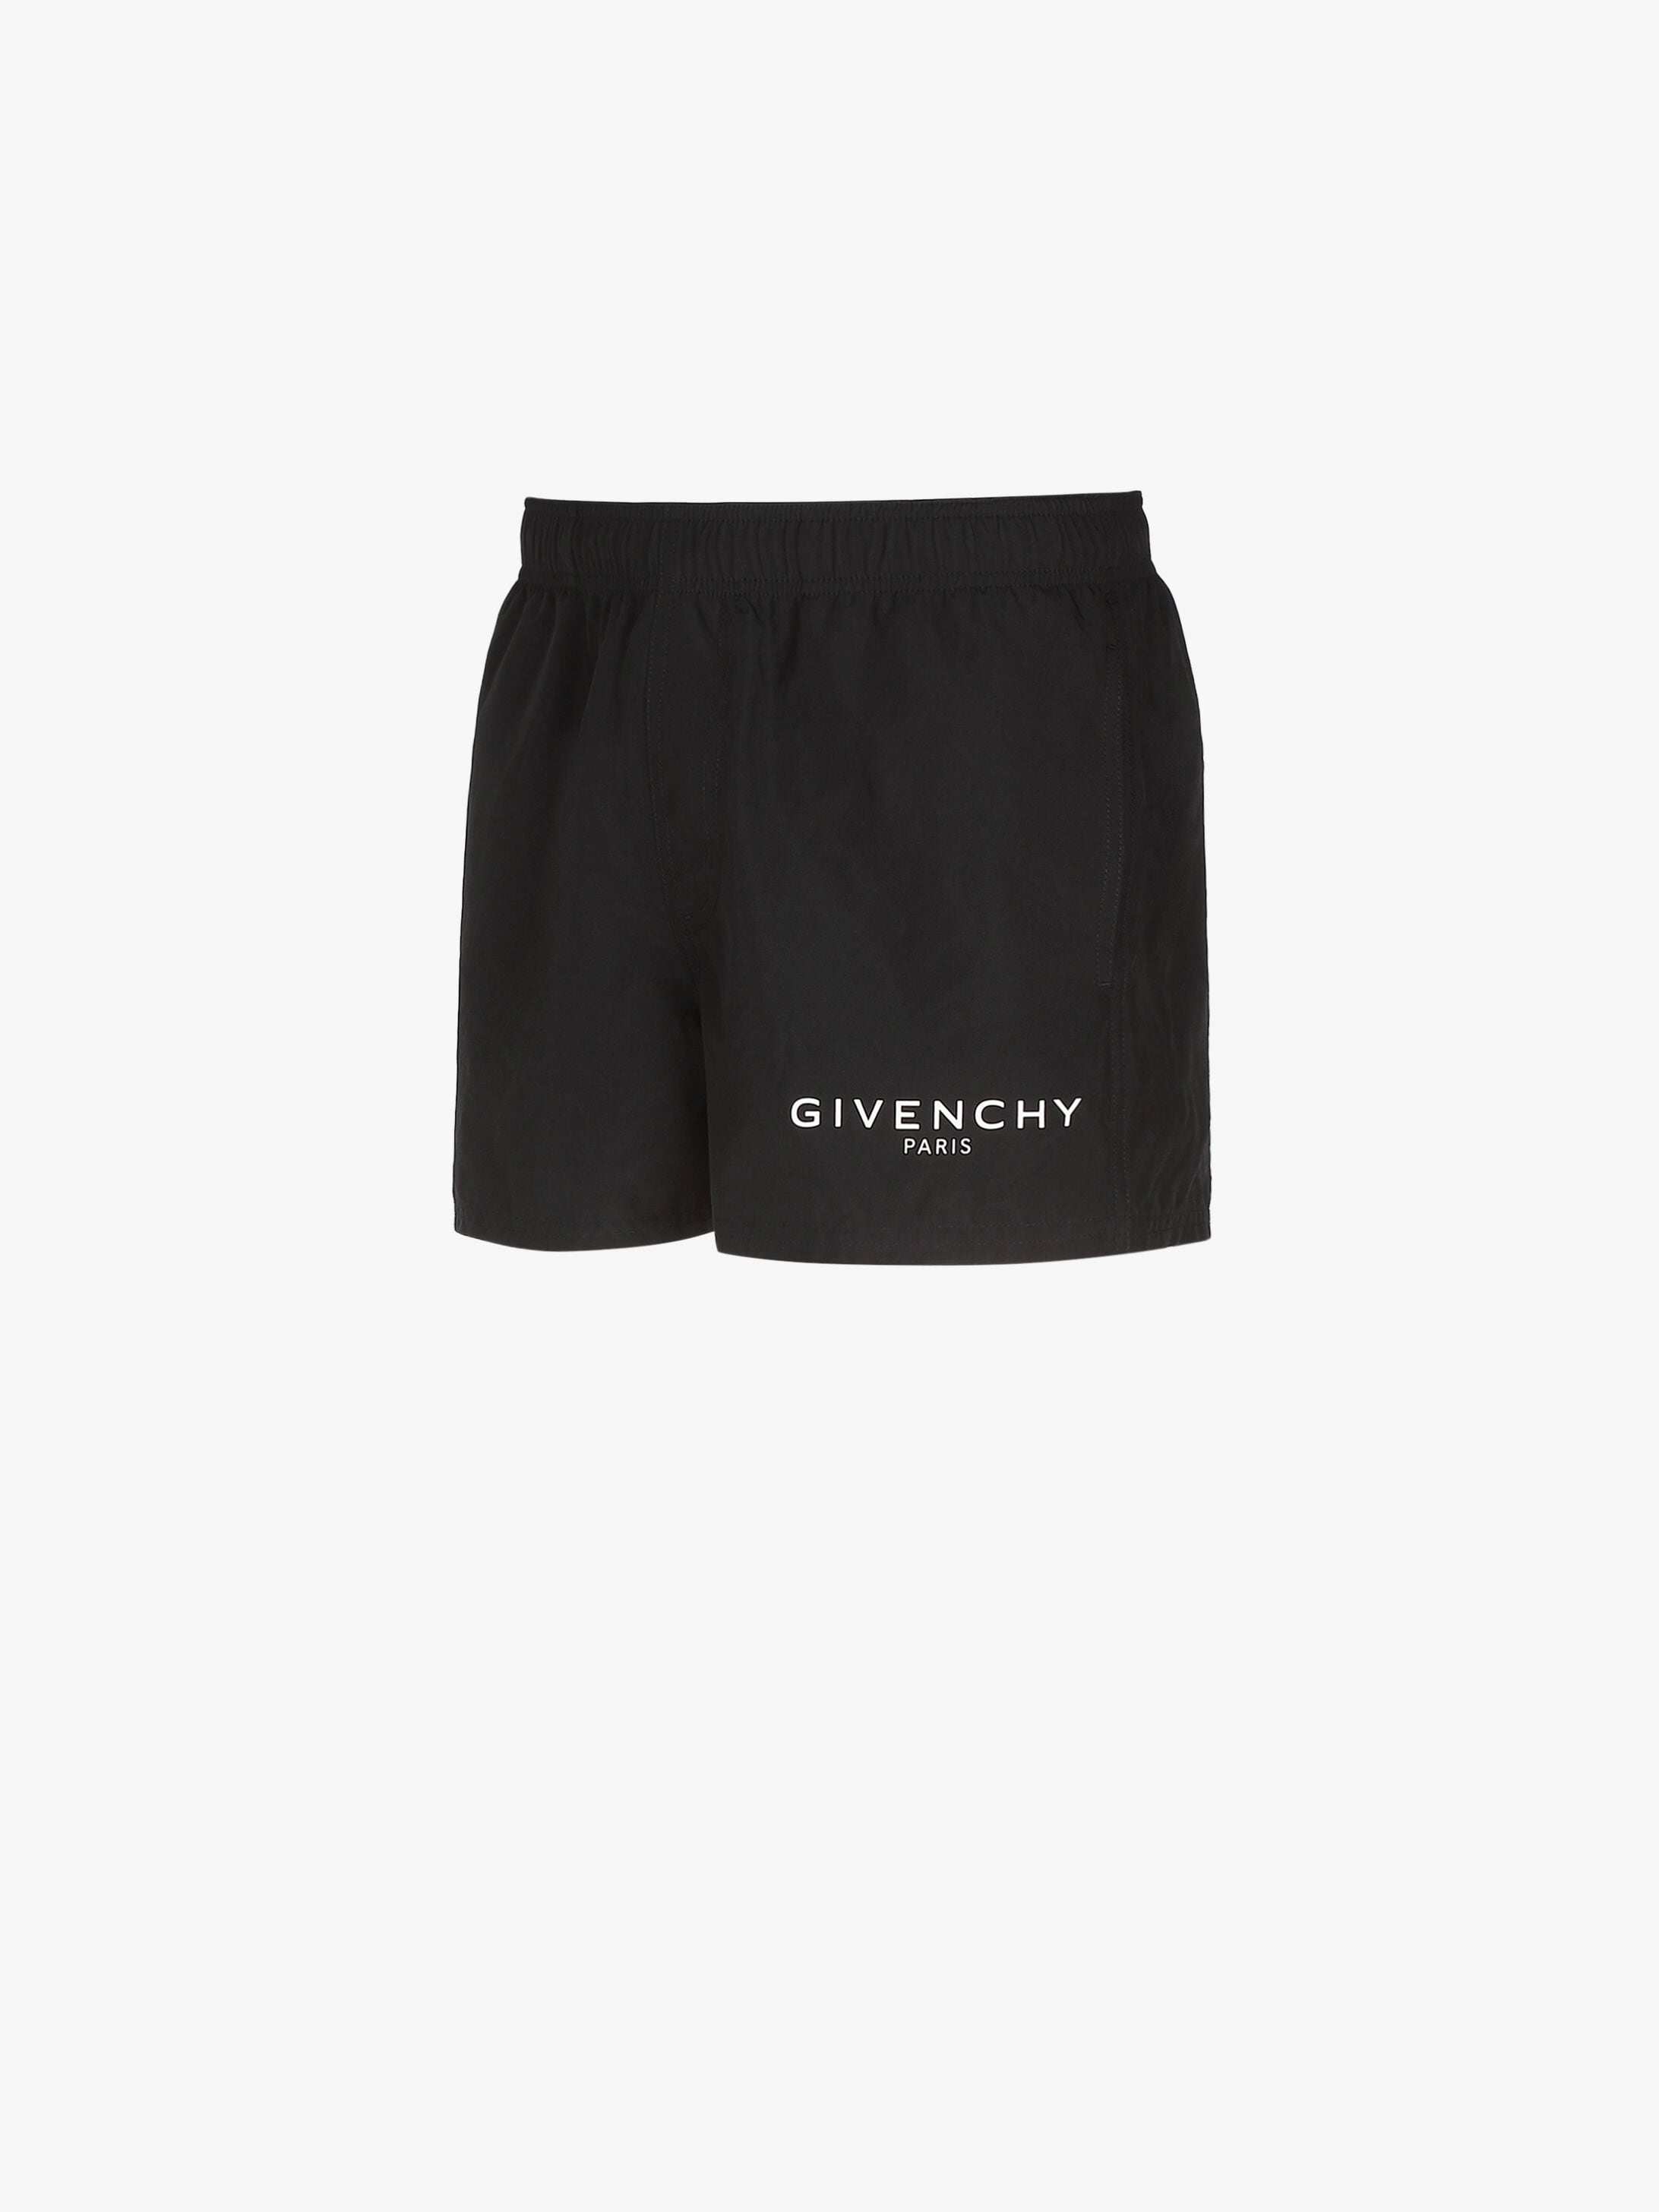 givenchy shorts womens